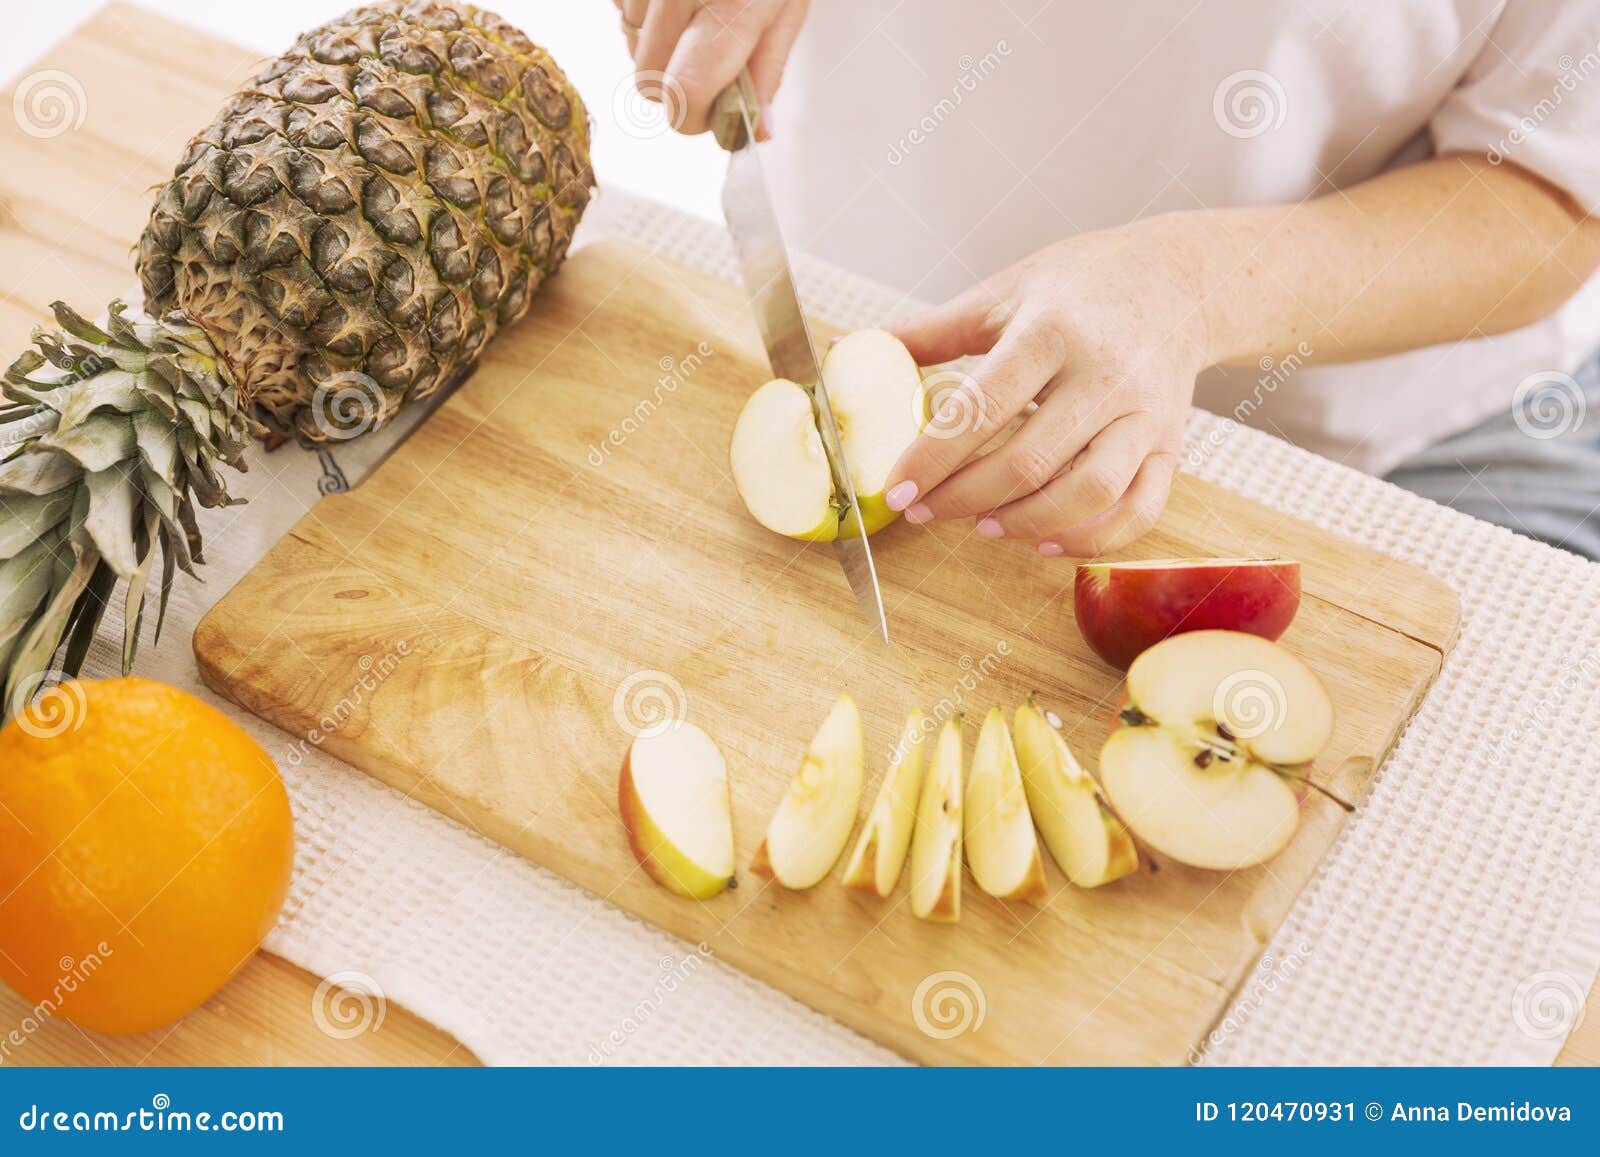 La Donna Taglia La Frutta Sulle Fette Su Un Tagliere Immagine Stock -  Immagine di freschezza, taglio: 120470931